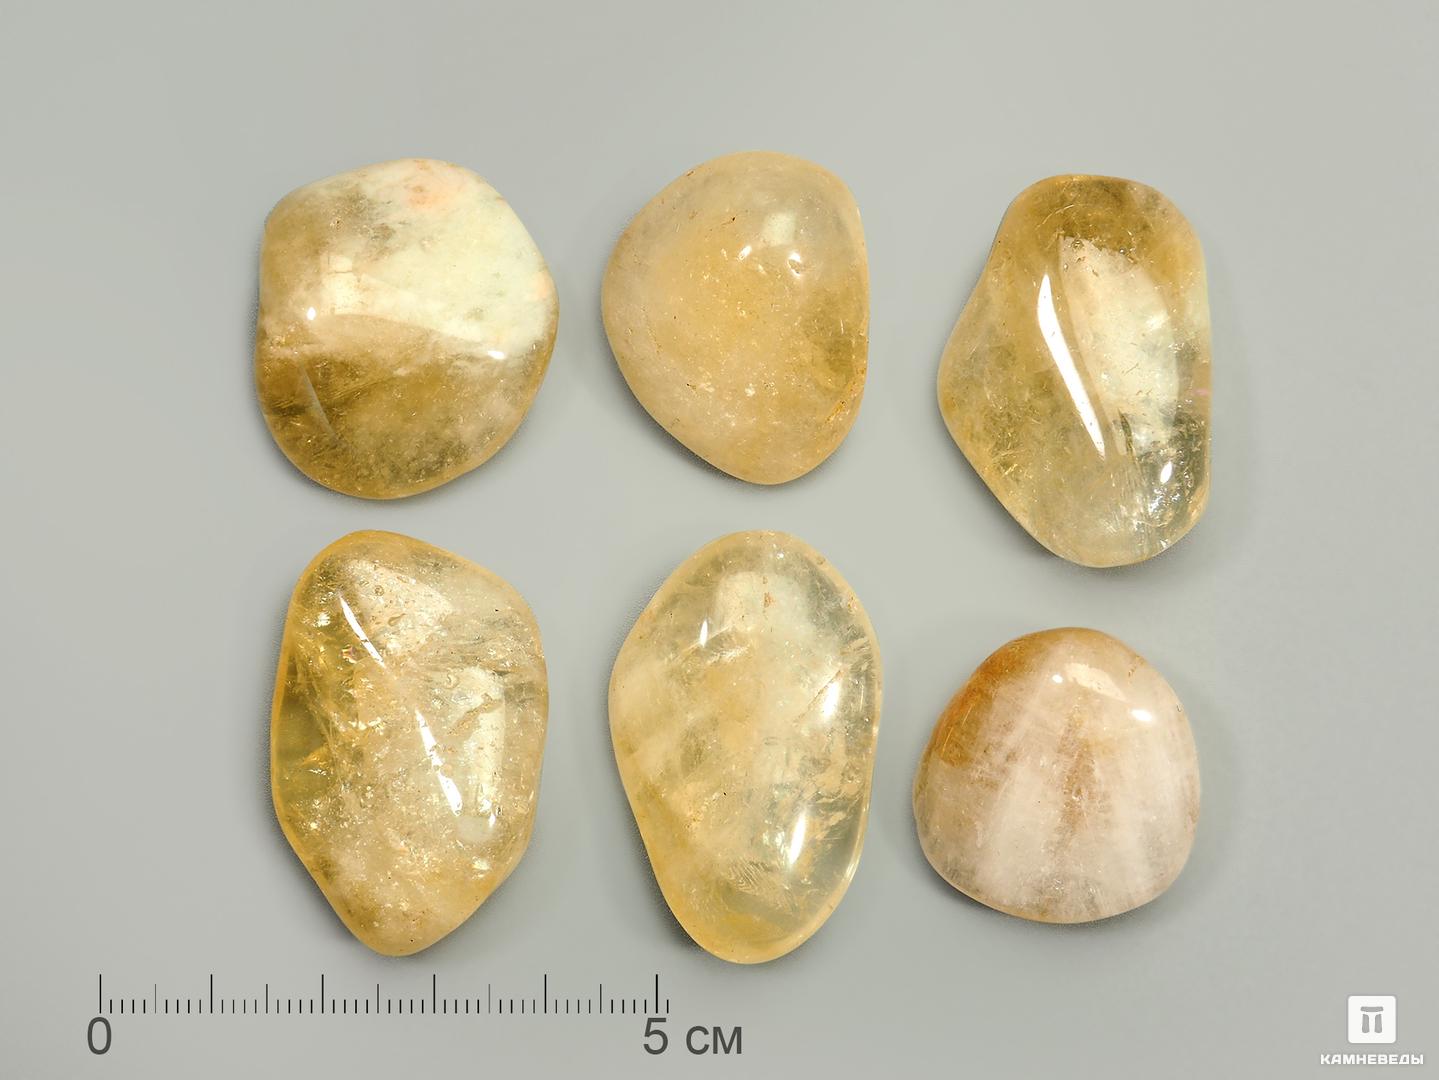 Цитрин (облагороженный аметист), крупная галтовка 3-4 см (15-20 г), 3804, фото 1